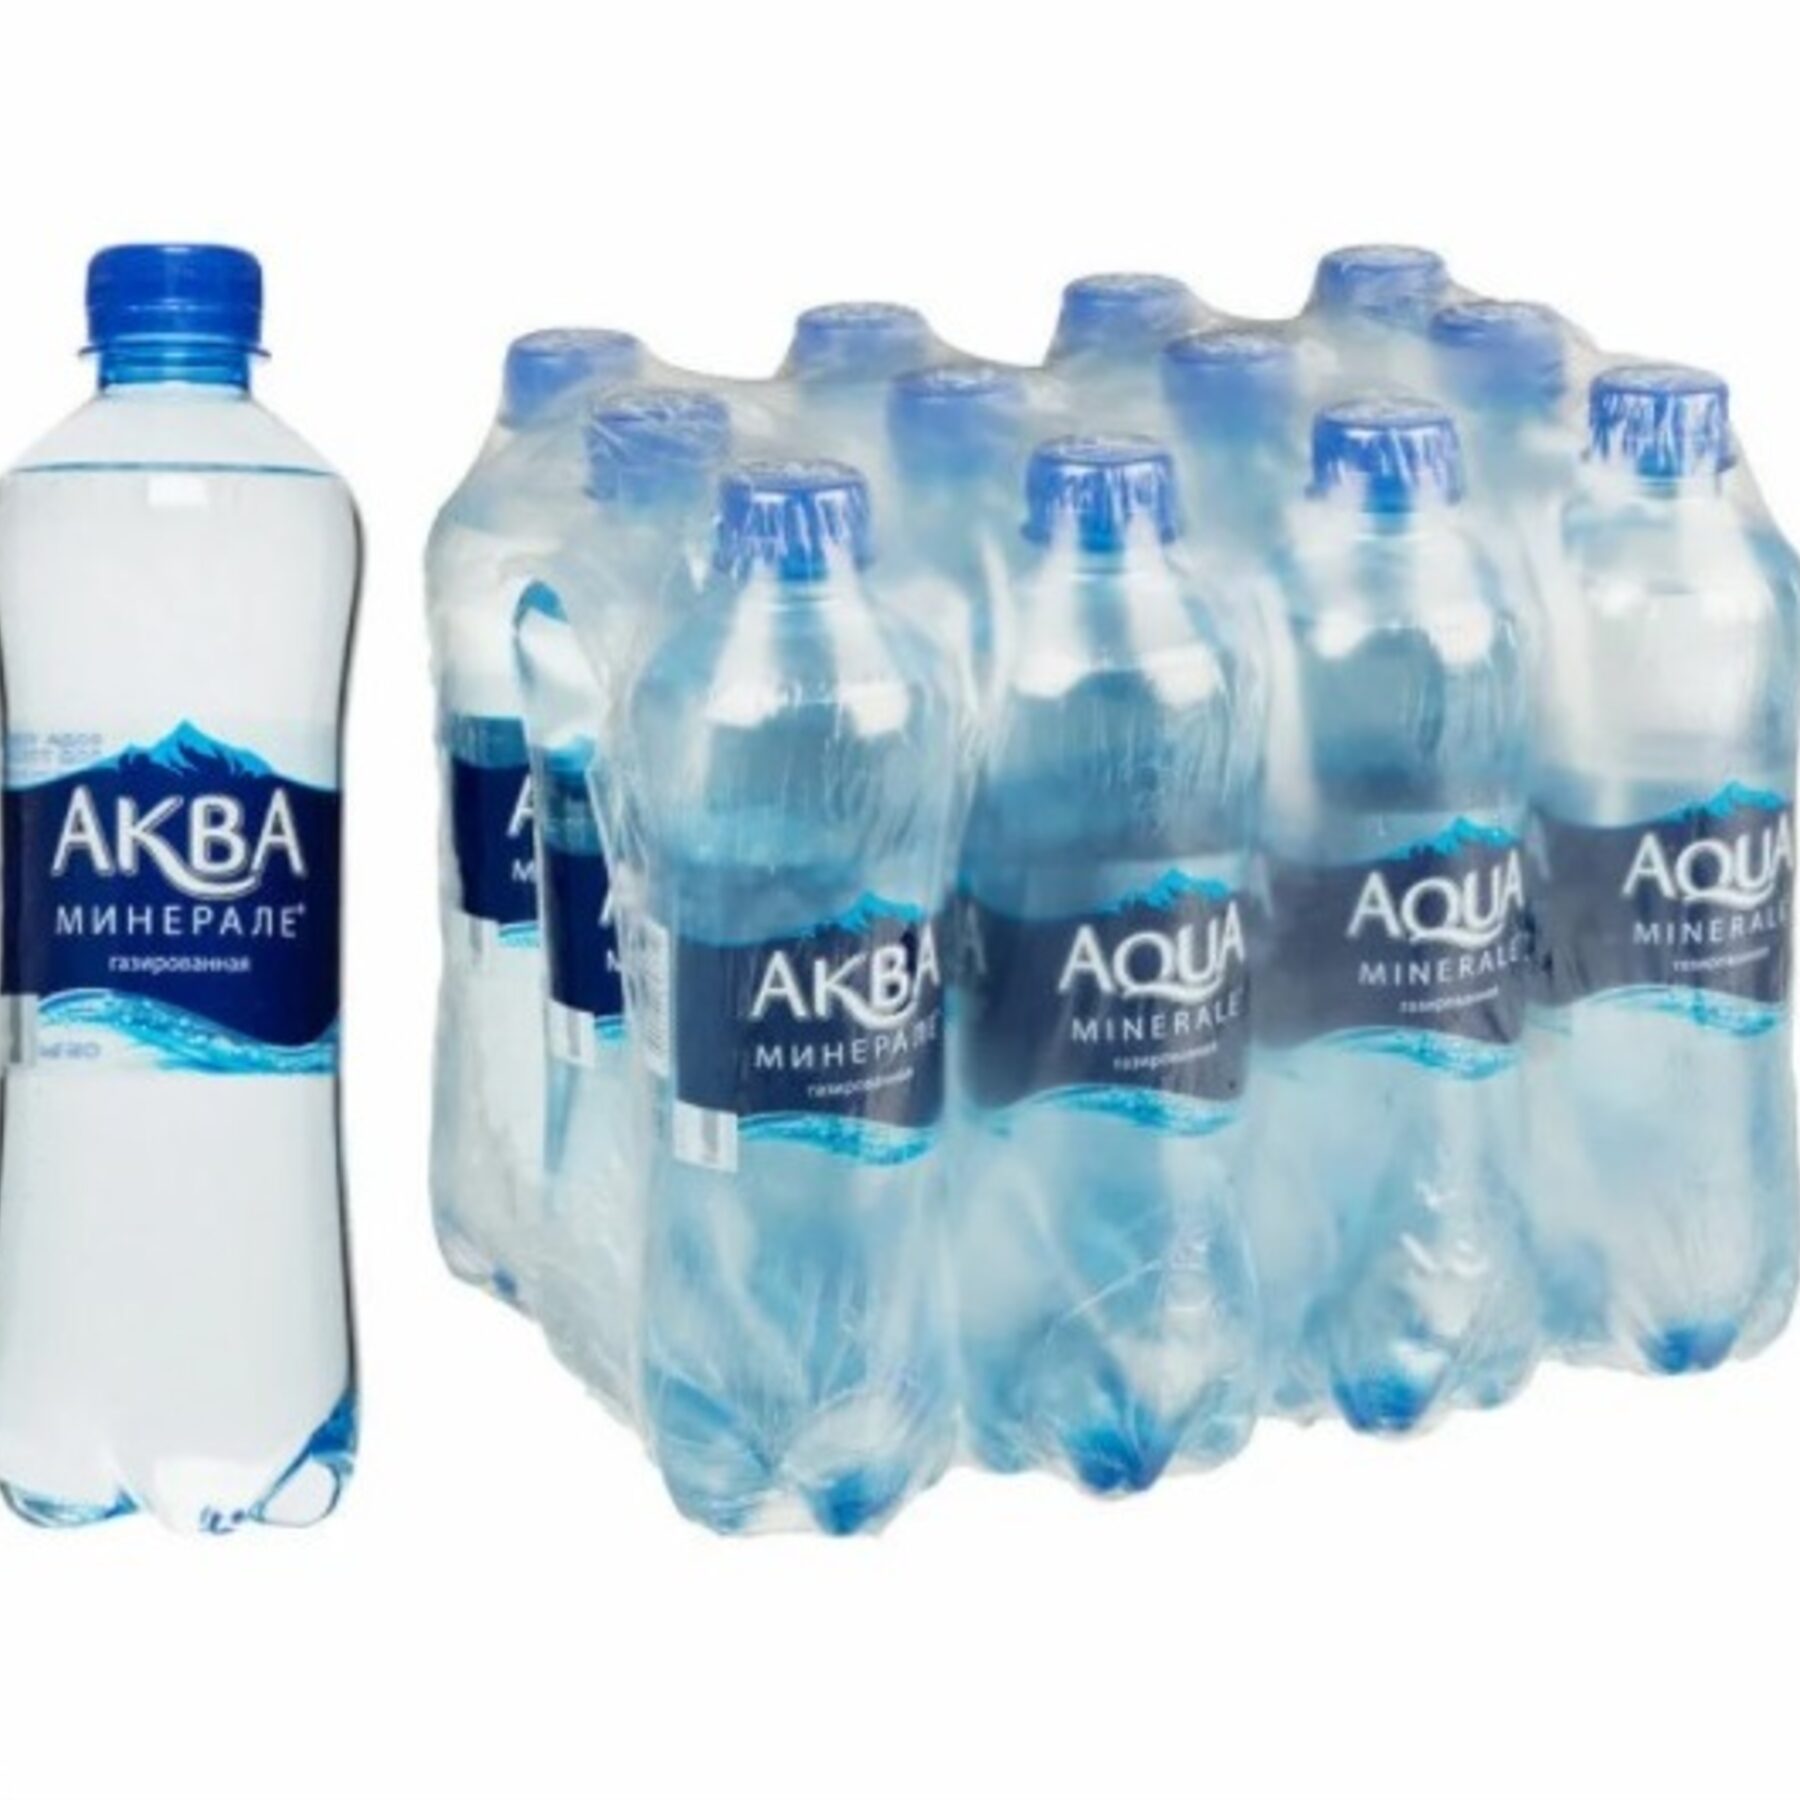 Газированная вода 5л. Aqua minerale вода питьевая ГАЗ 0.5Л. Аква минер ГАЗ 0,5. Aqua minerale вода 0.5. Вода Аква Минерале газированная 0,5л.